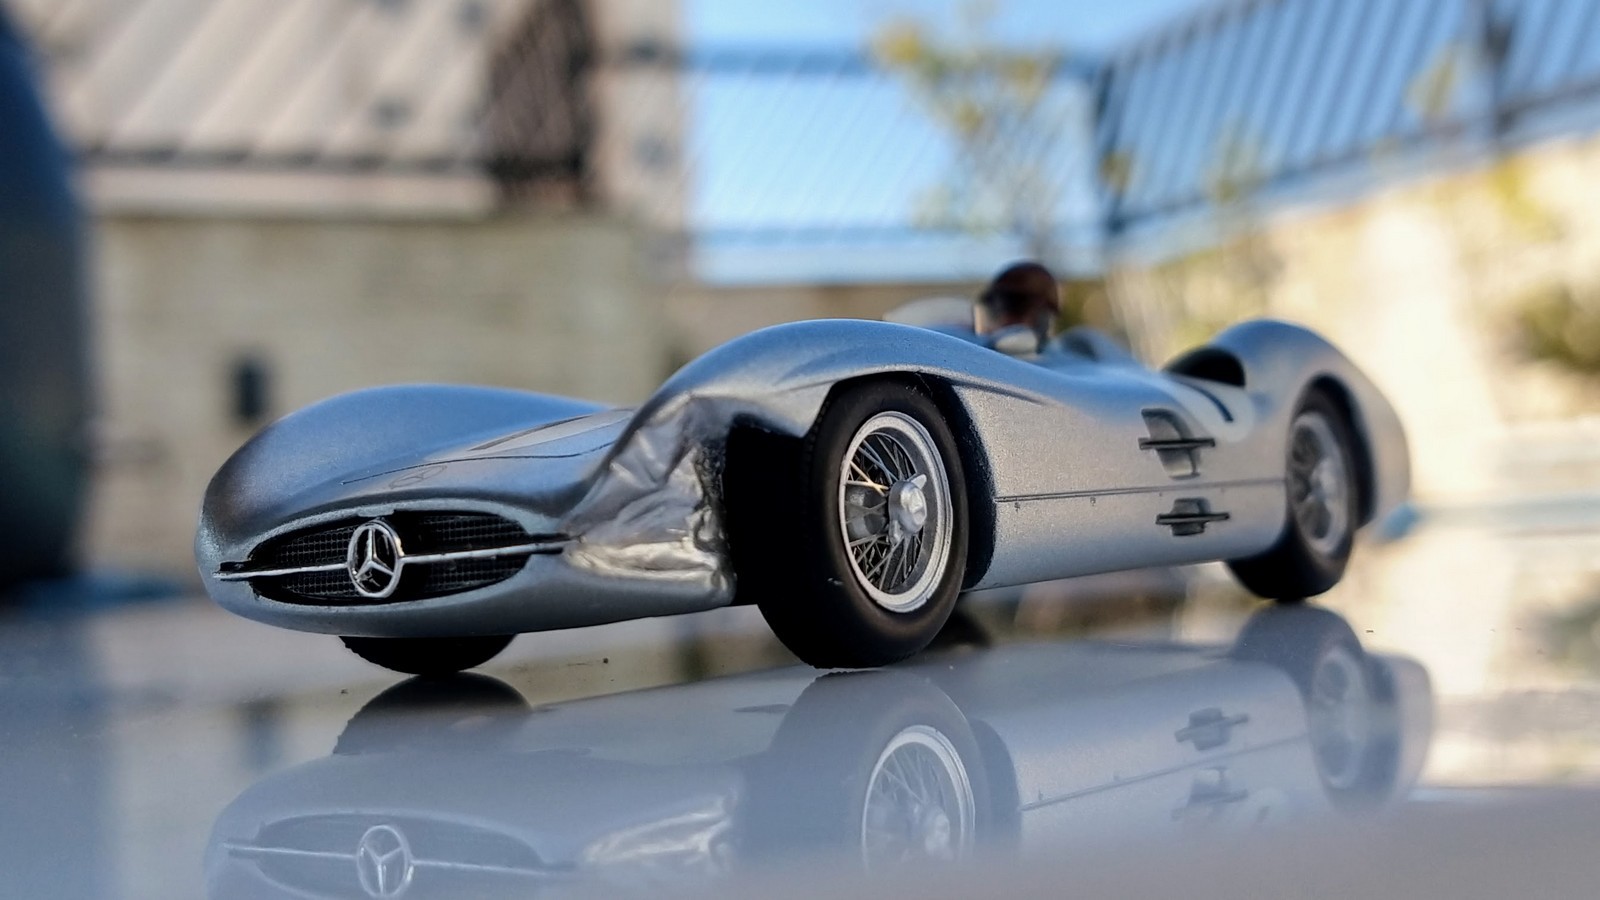 Coleção de miniaturas de Fórmula 1 — Foto: Lucca Mendonça